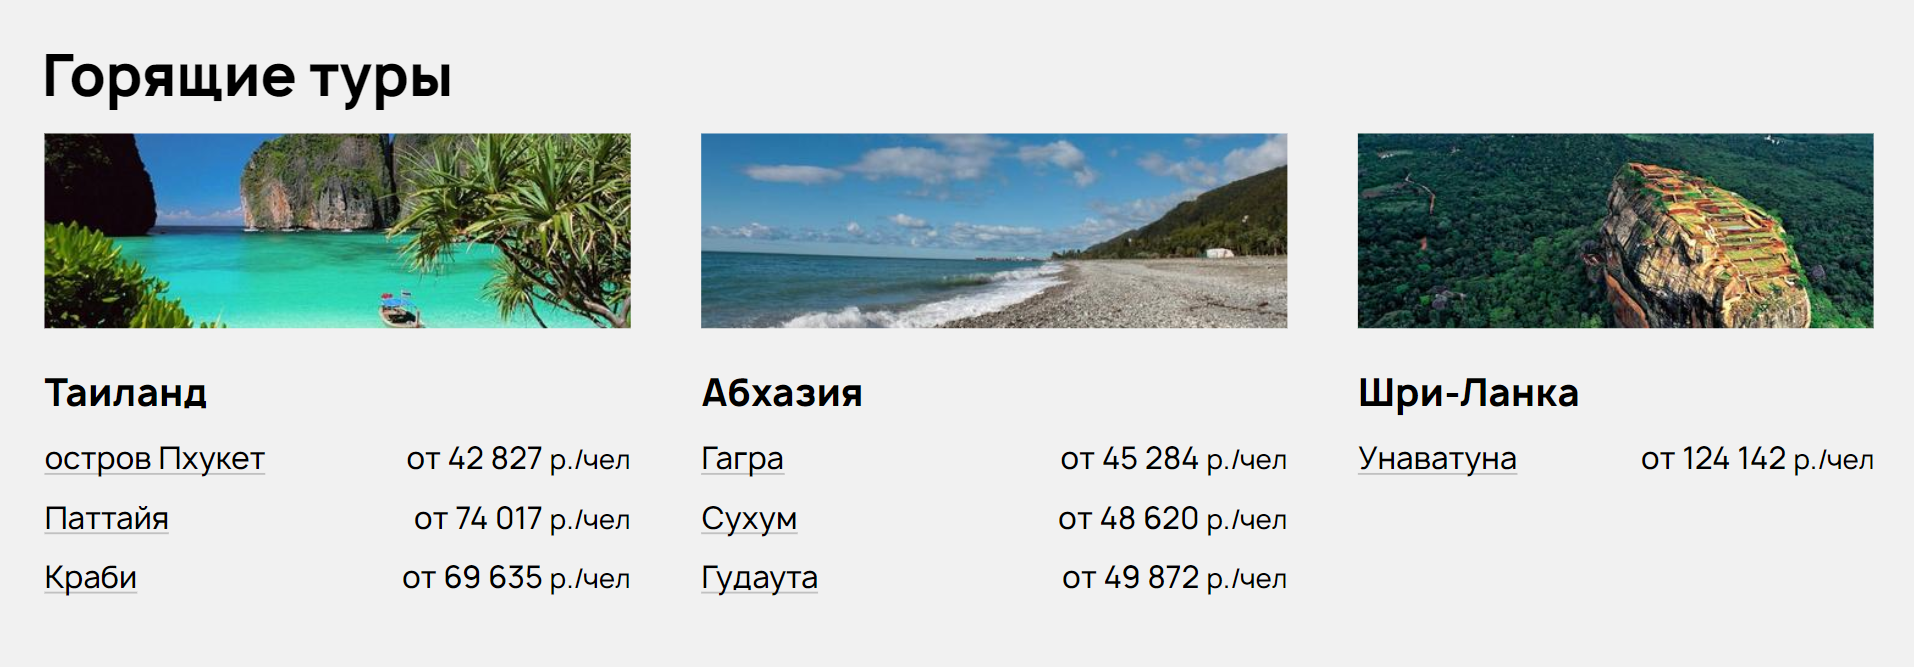 Раздел «Горящие туры» на агрегаторе «Онлайн⁠-⁠турс». Источник: onlinetours.ru